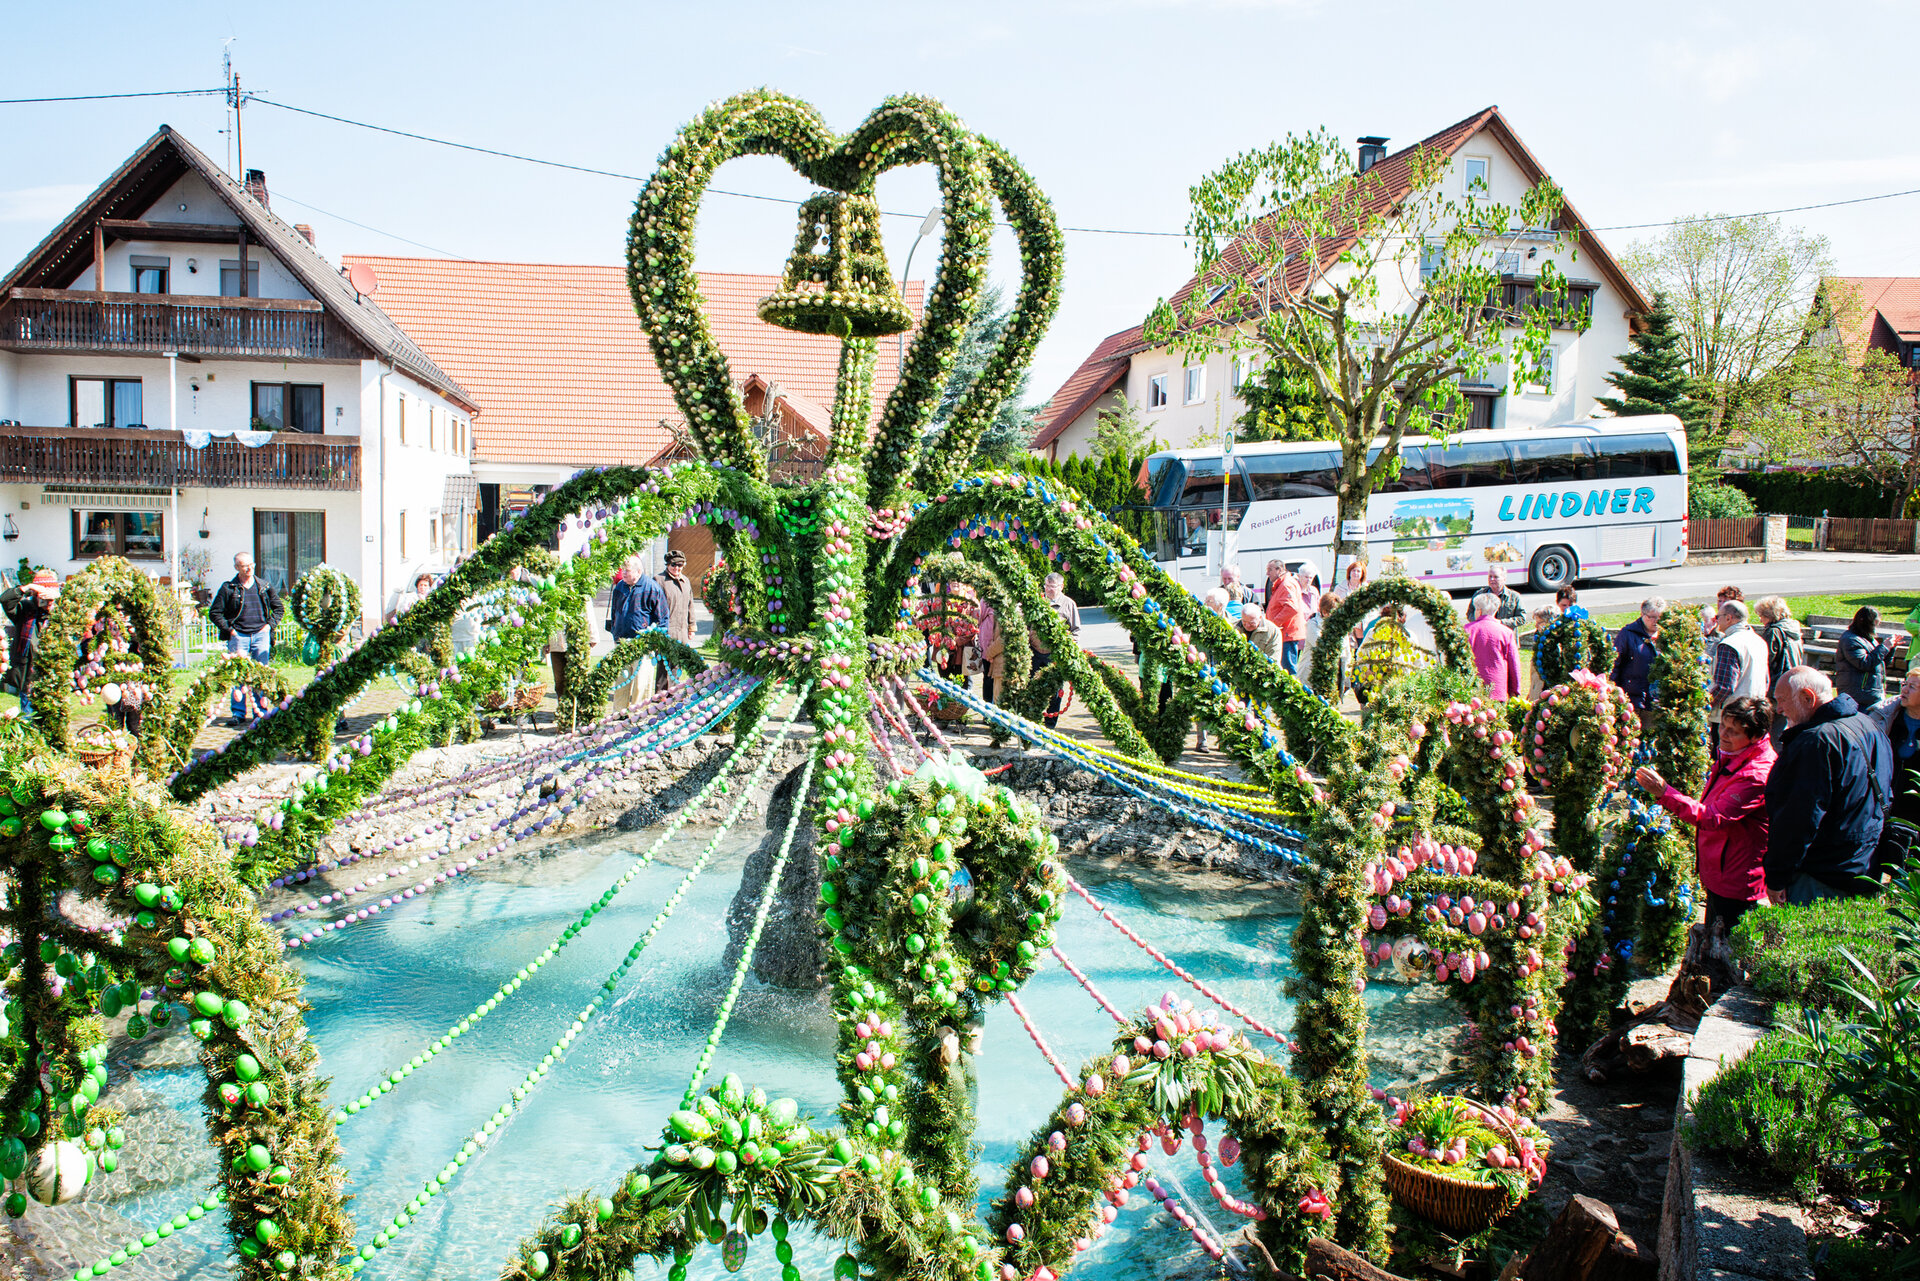 Ein bunt geschmückter Osterbrunnen mit vielen Ostereiern und grünen Girlanden wird von Besuchern bewundert.